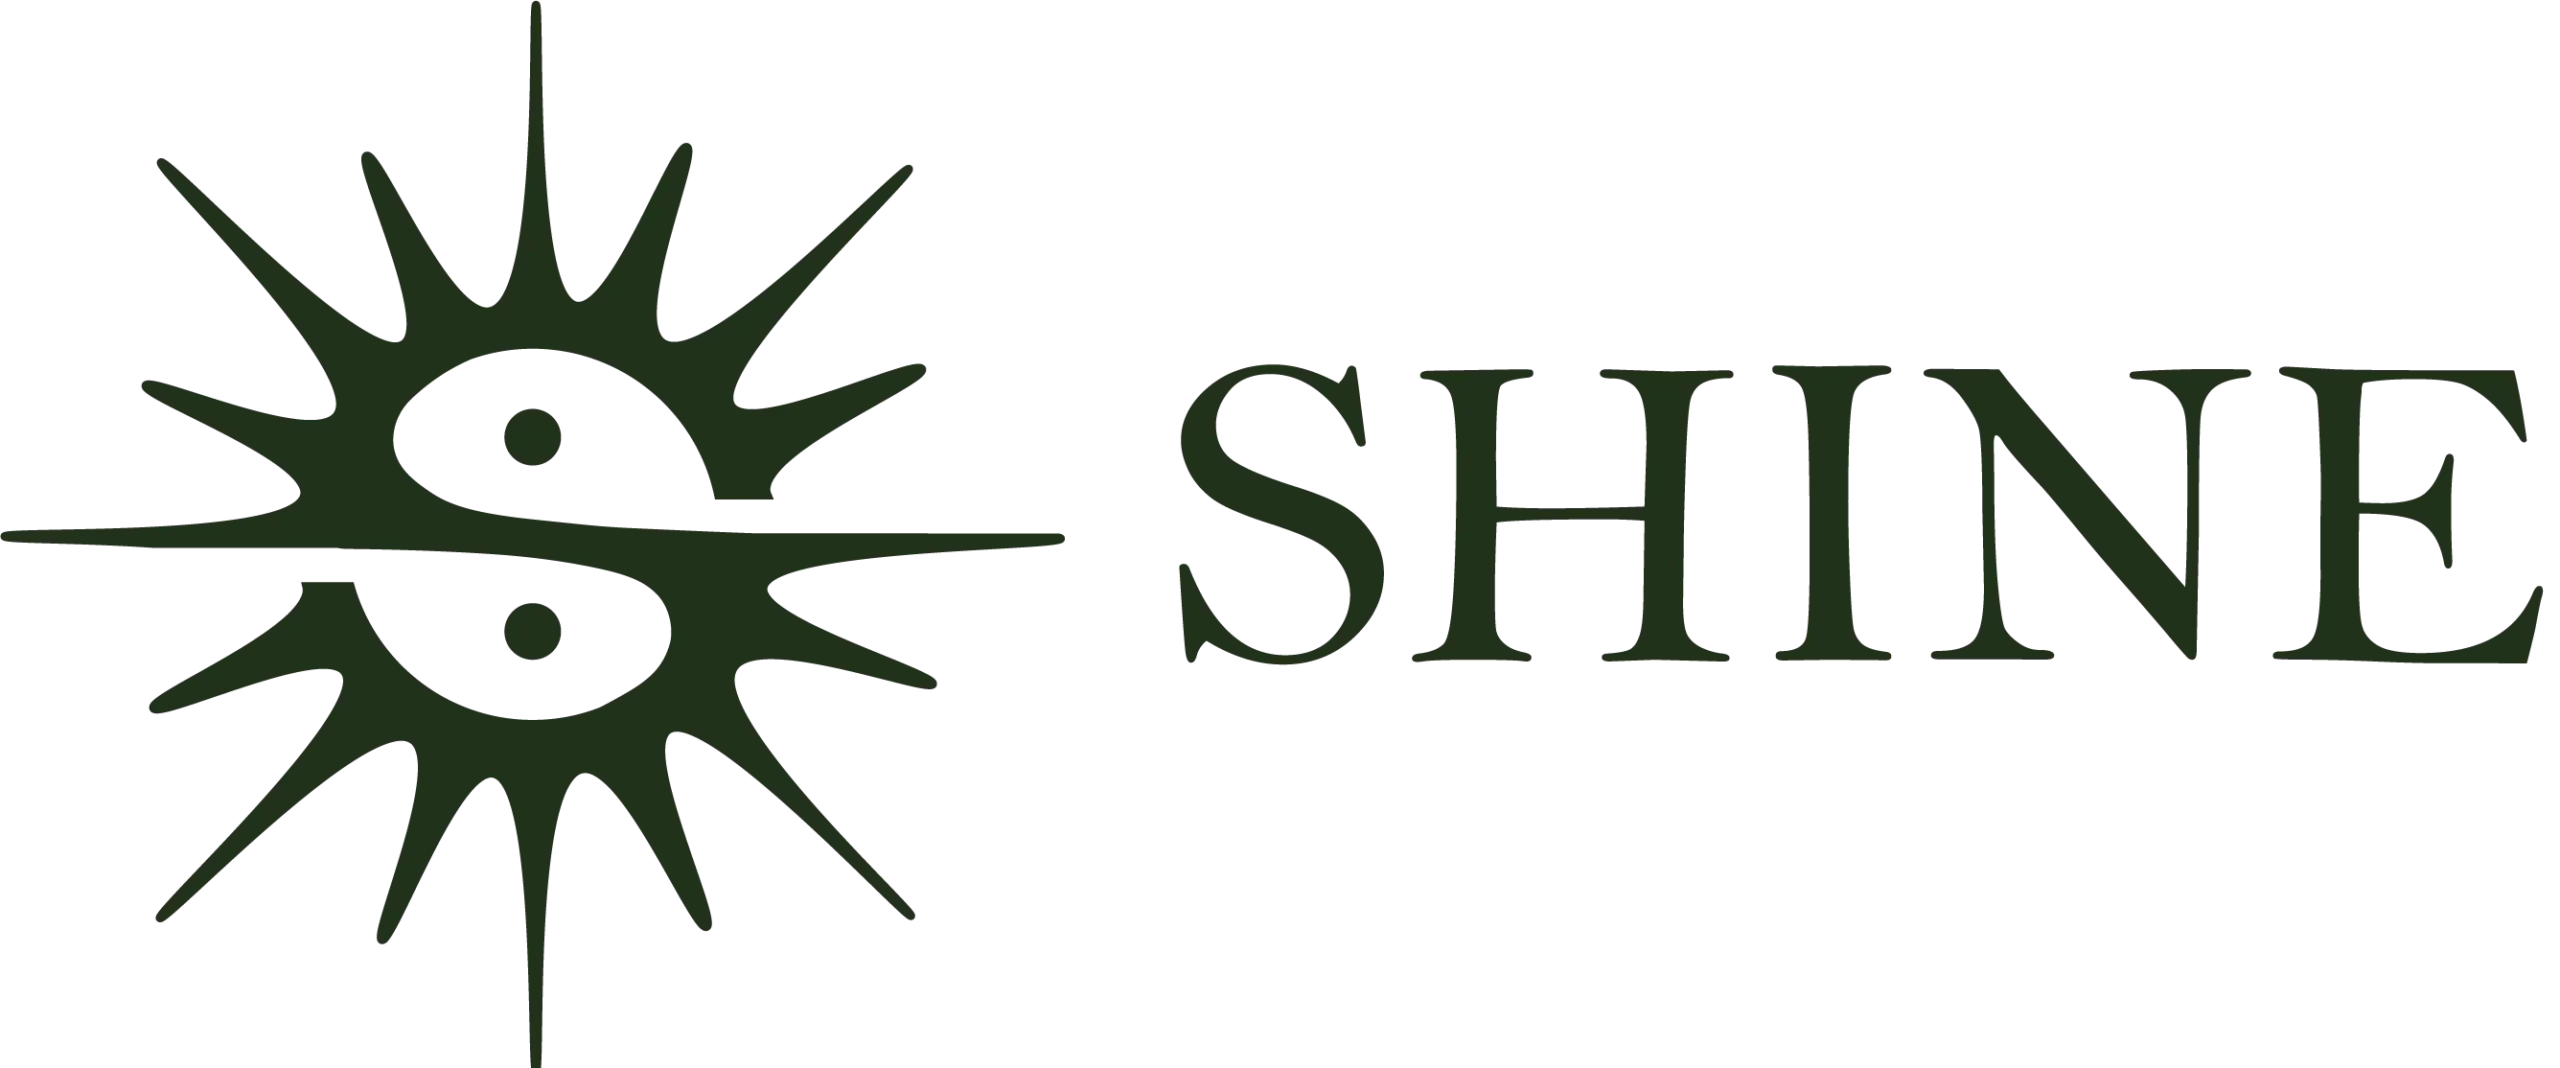 logo shine